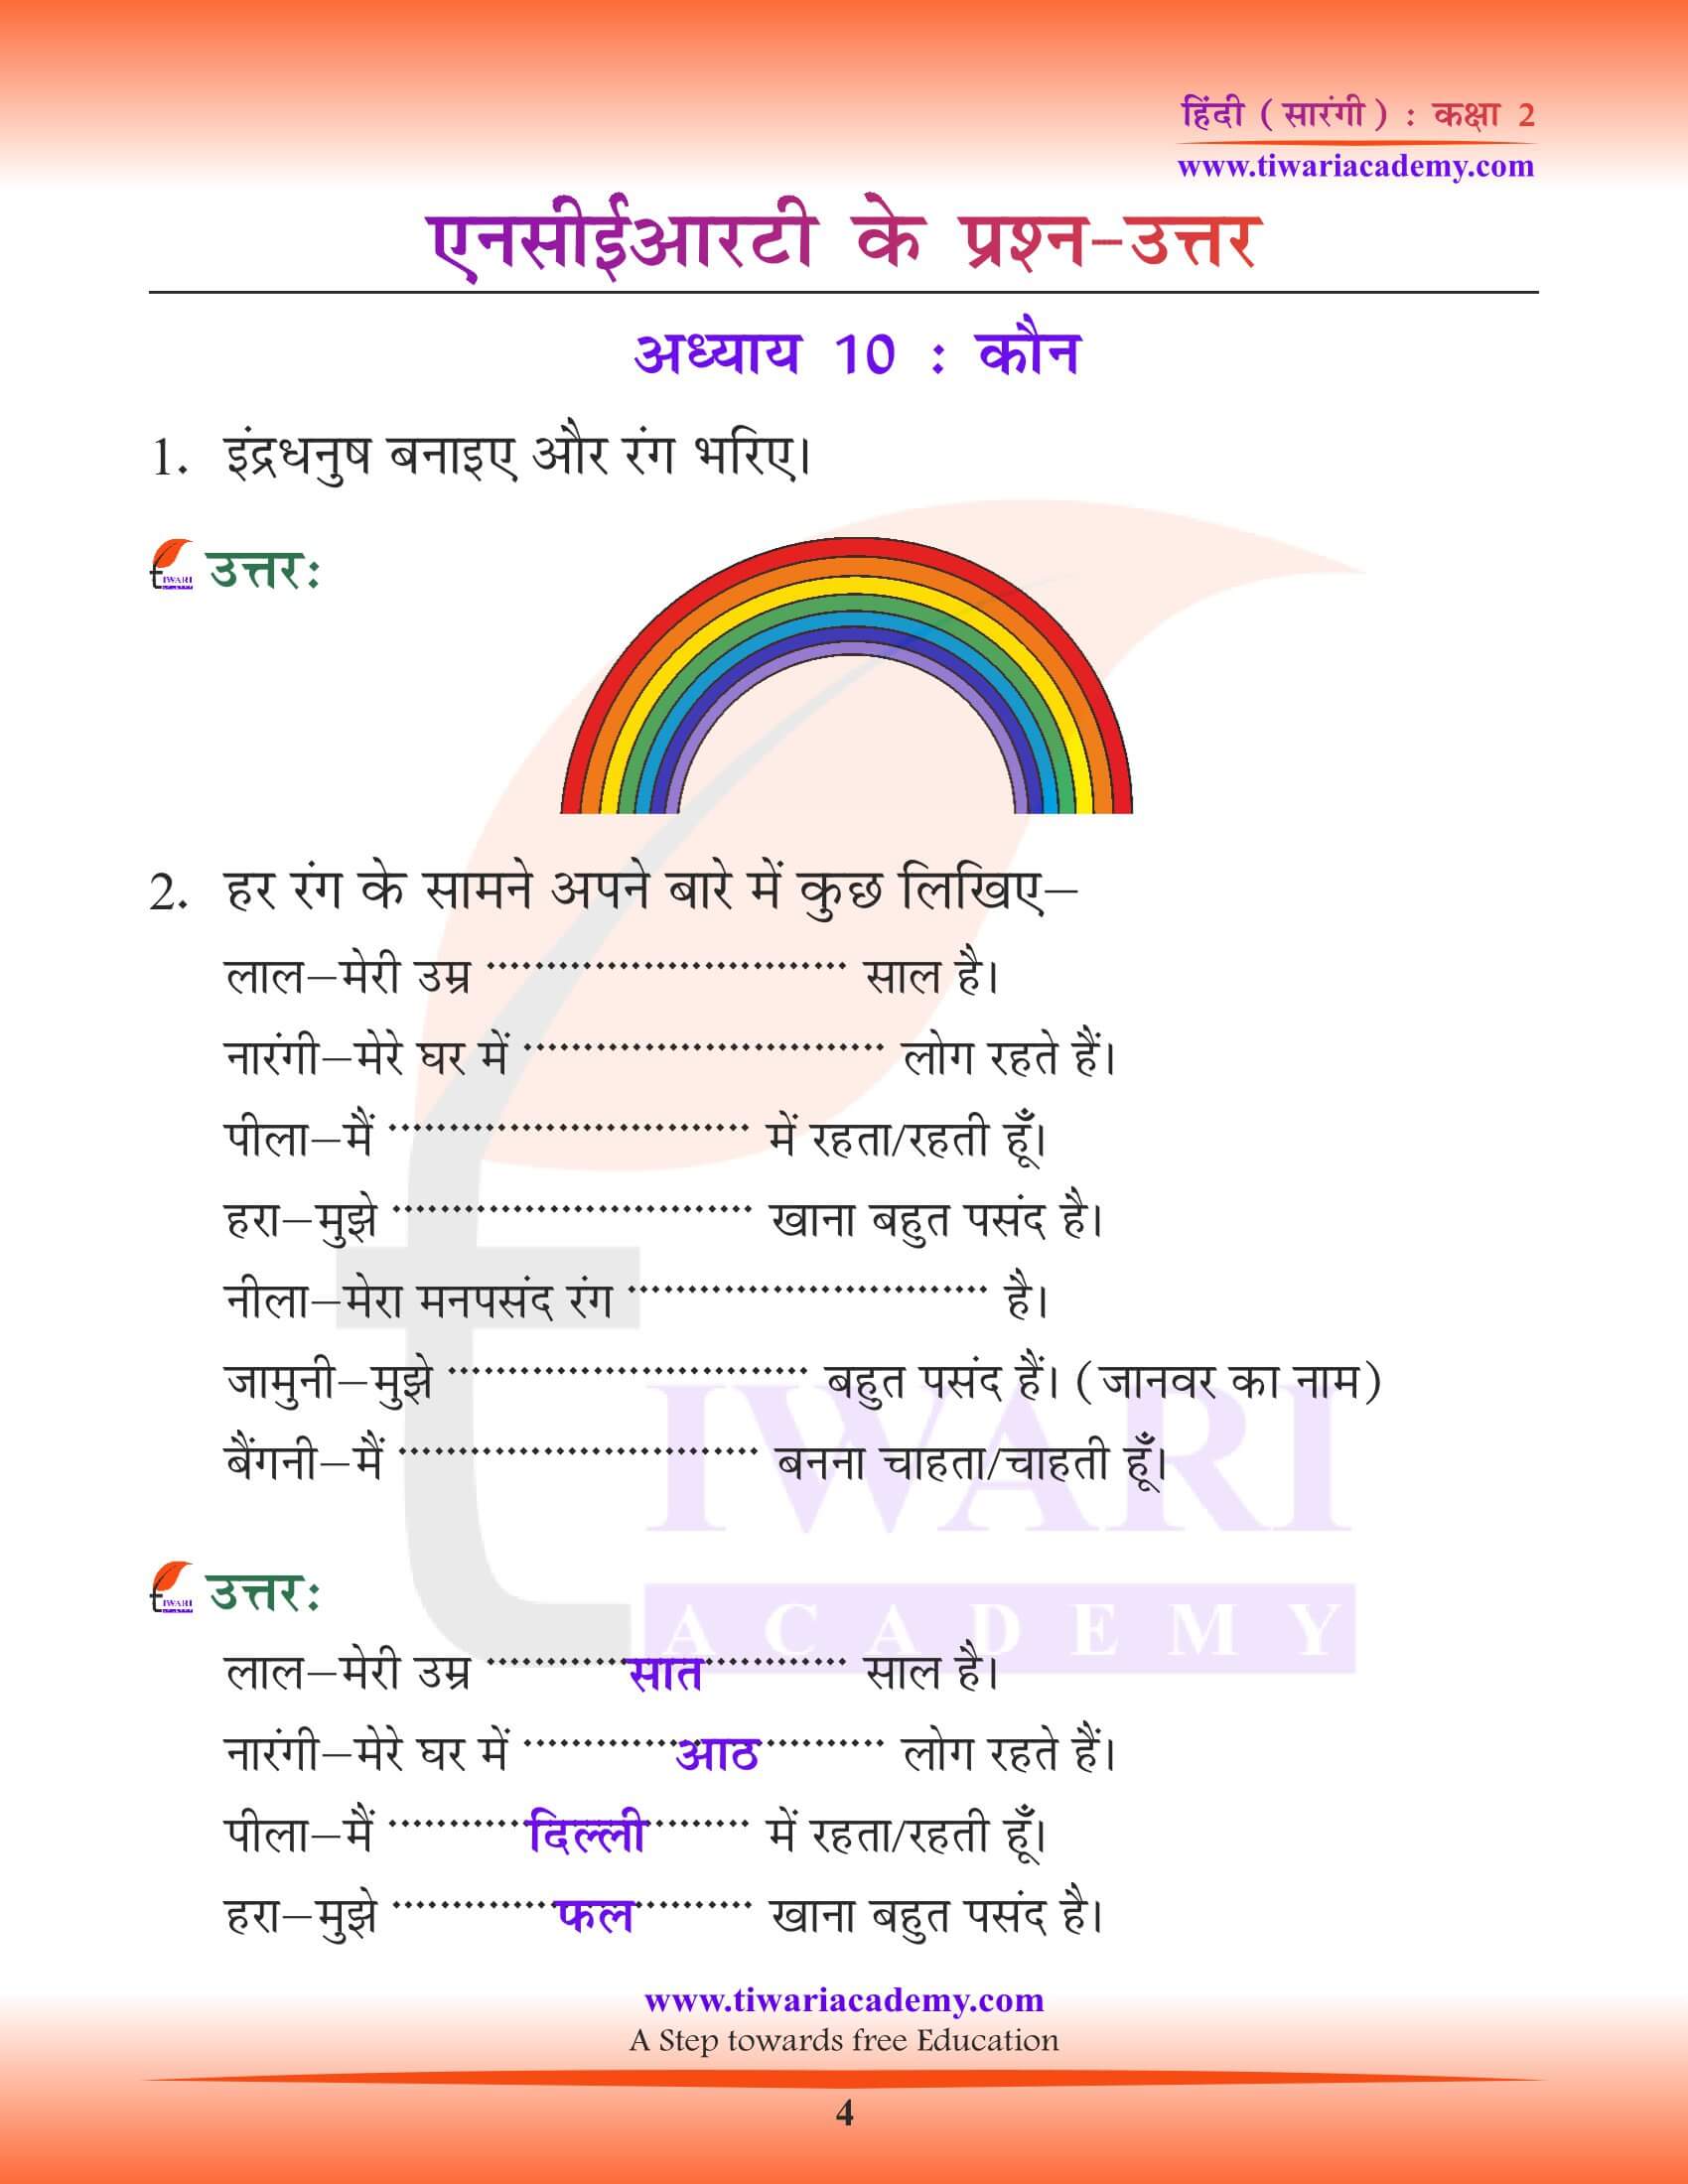 कक्षा 2 हिंदी सारंगी अध्याय 10